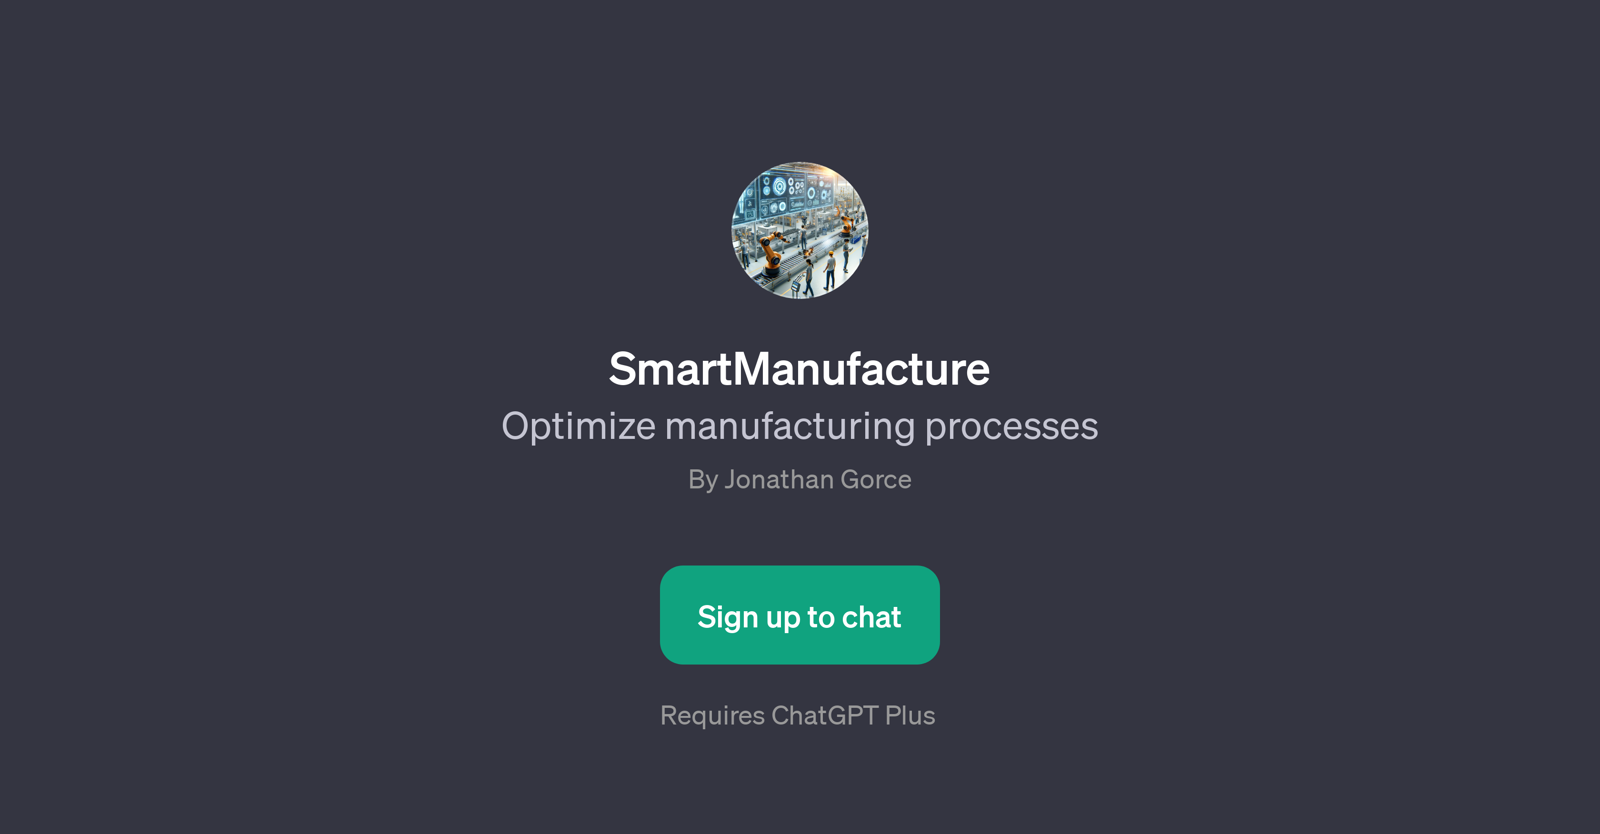 SmartManufacture website